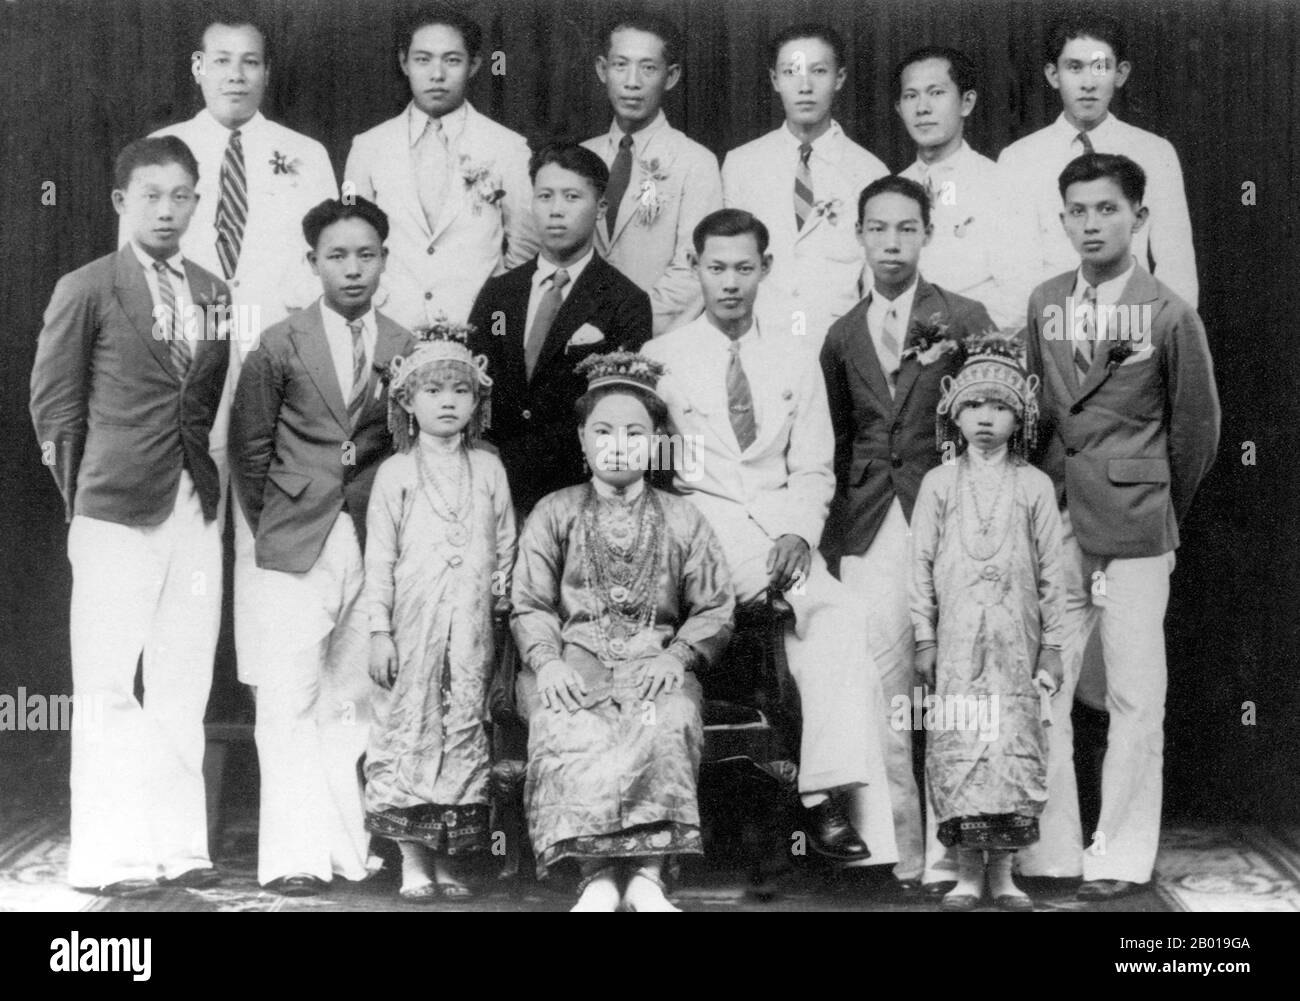 Thaïlande: Un groupe de citoyens prospères de Phuket en 1942. La robe de la femme et de deux petites filles indiquent qu'elles sont de l'ethnie chinoise 'Phuket Babas'. Phuket, anciennement connu sous le nom de Talang et, dans des sources occidentales, Junk Ceylon (une corruption de la Malay Tanjung Salang, c'est-à-dire le cap Salang), est l'une des provinces méridionales (changwat) de la Thaïlande. Les provinces voisines sont (du nord dans le sens des aiguilles d'une montre) Phang Nga et Krabi, mais comme Phuket est une île, il n'y a pas de frontières terrestres. Phuket, qui est approximativement de la taille de Singapour, est la plus grande île de Thaïlande. Banque D'Images